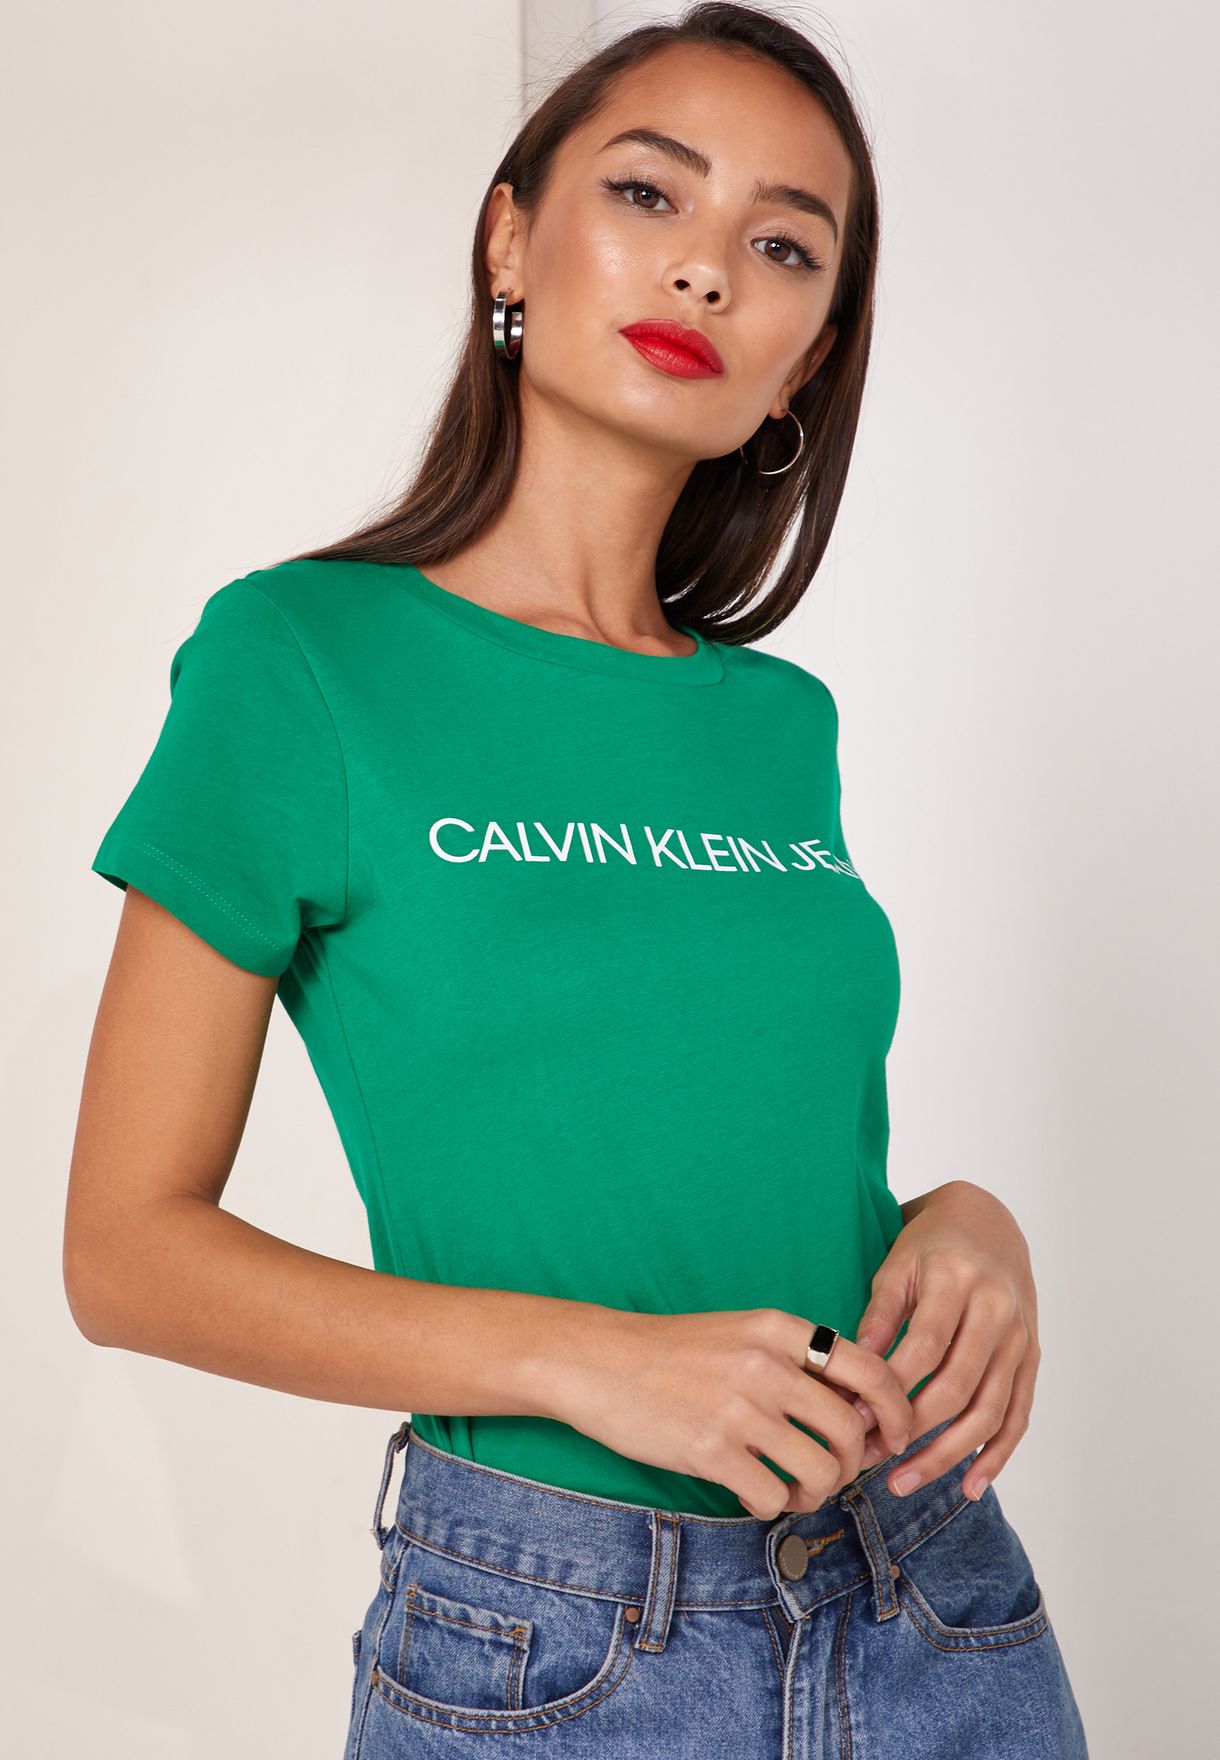 calvin klein t shirt green